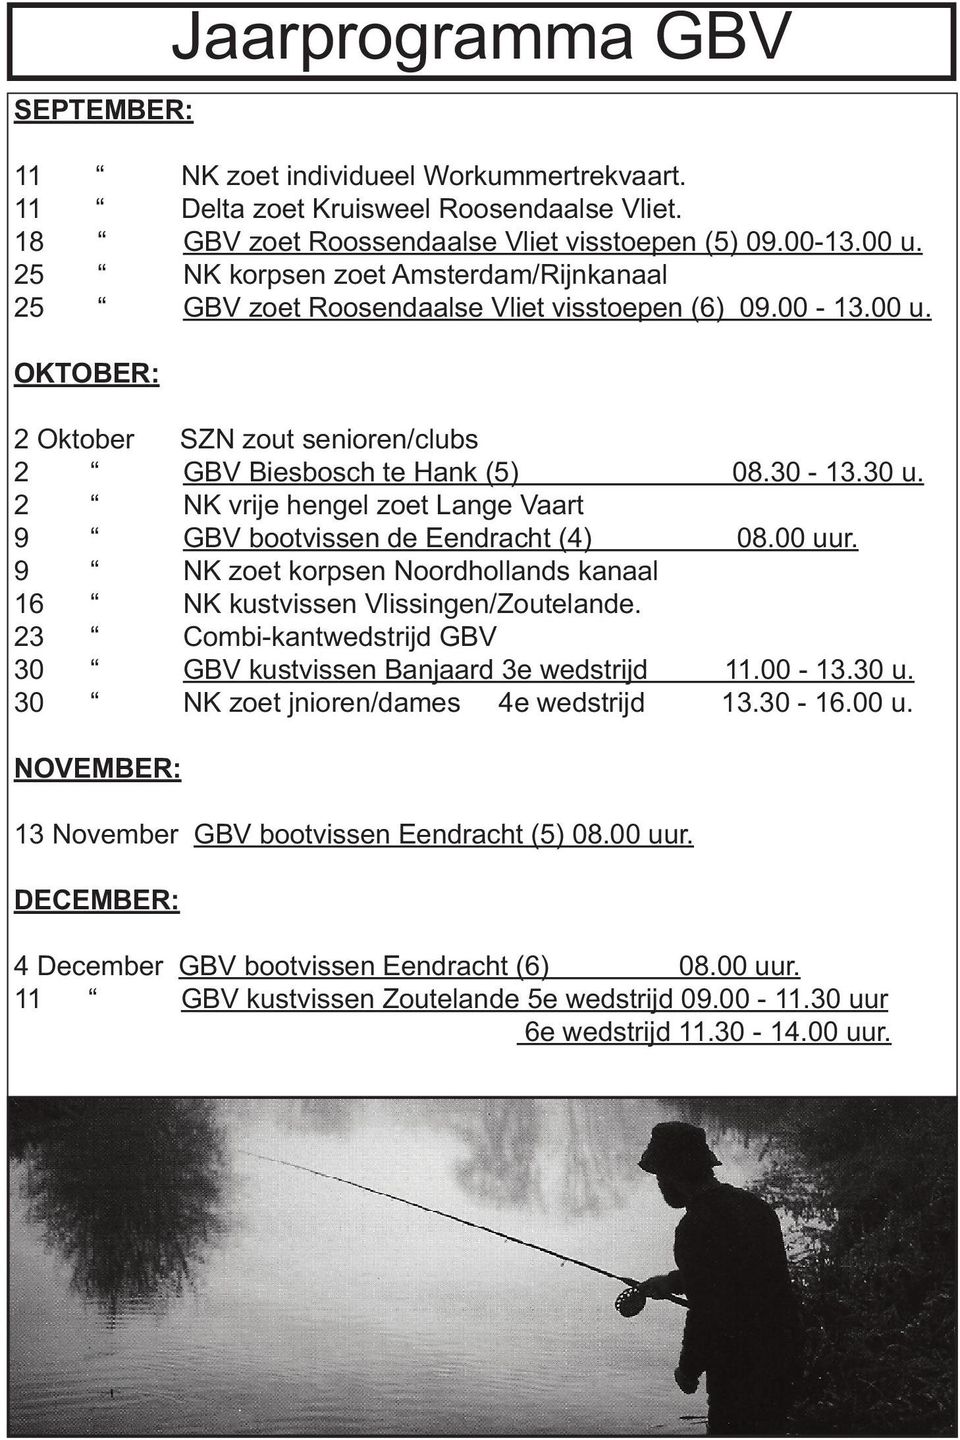 2 NK vrije hengel zoet Lange Vaart 9 GBV bootvissen de Eendracht (4) 08.00 uur. 9 NK zoet korpsen Noordhollands kanaal 16 NK kustvissen Vlissingen/Zoutelande.